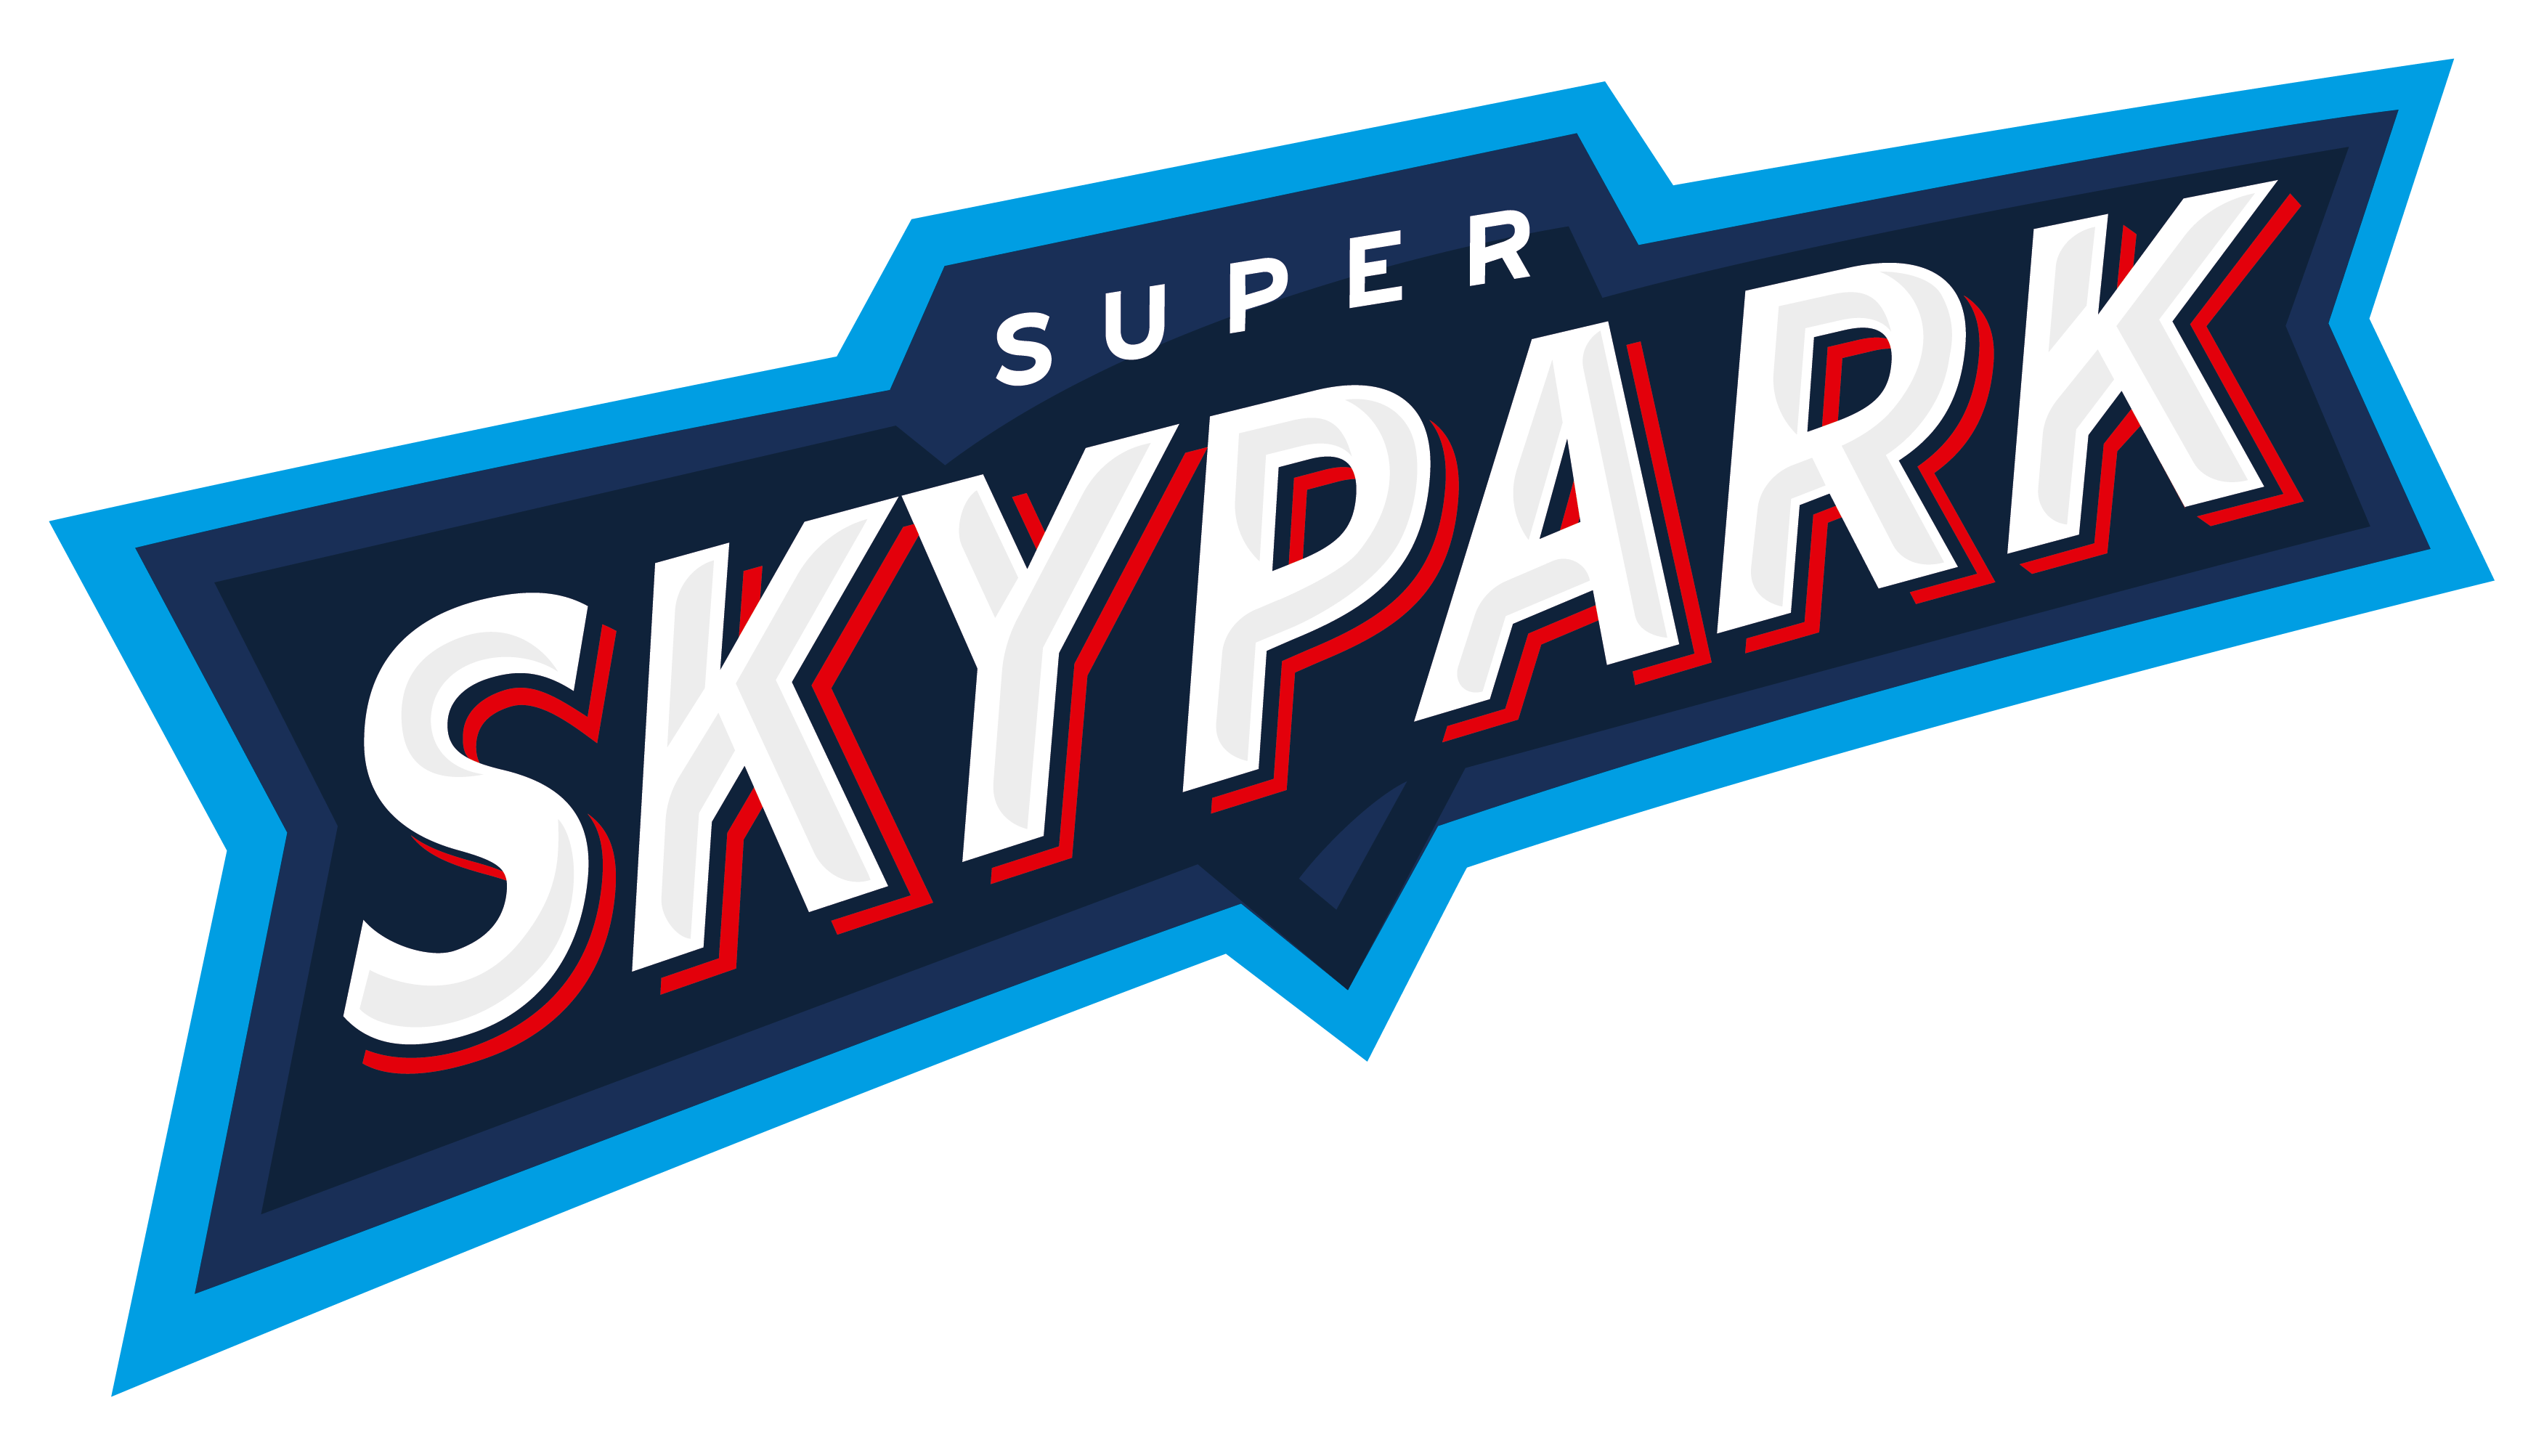 Super Skypark